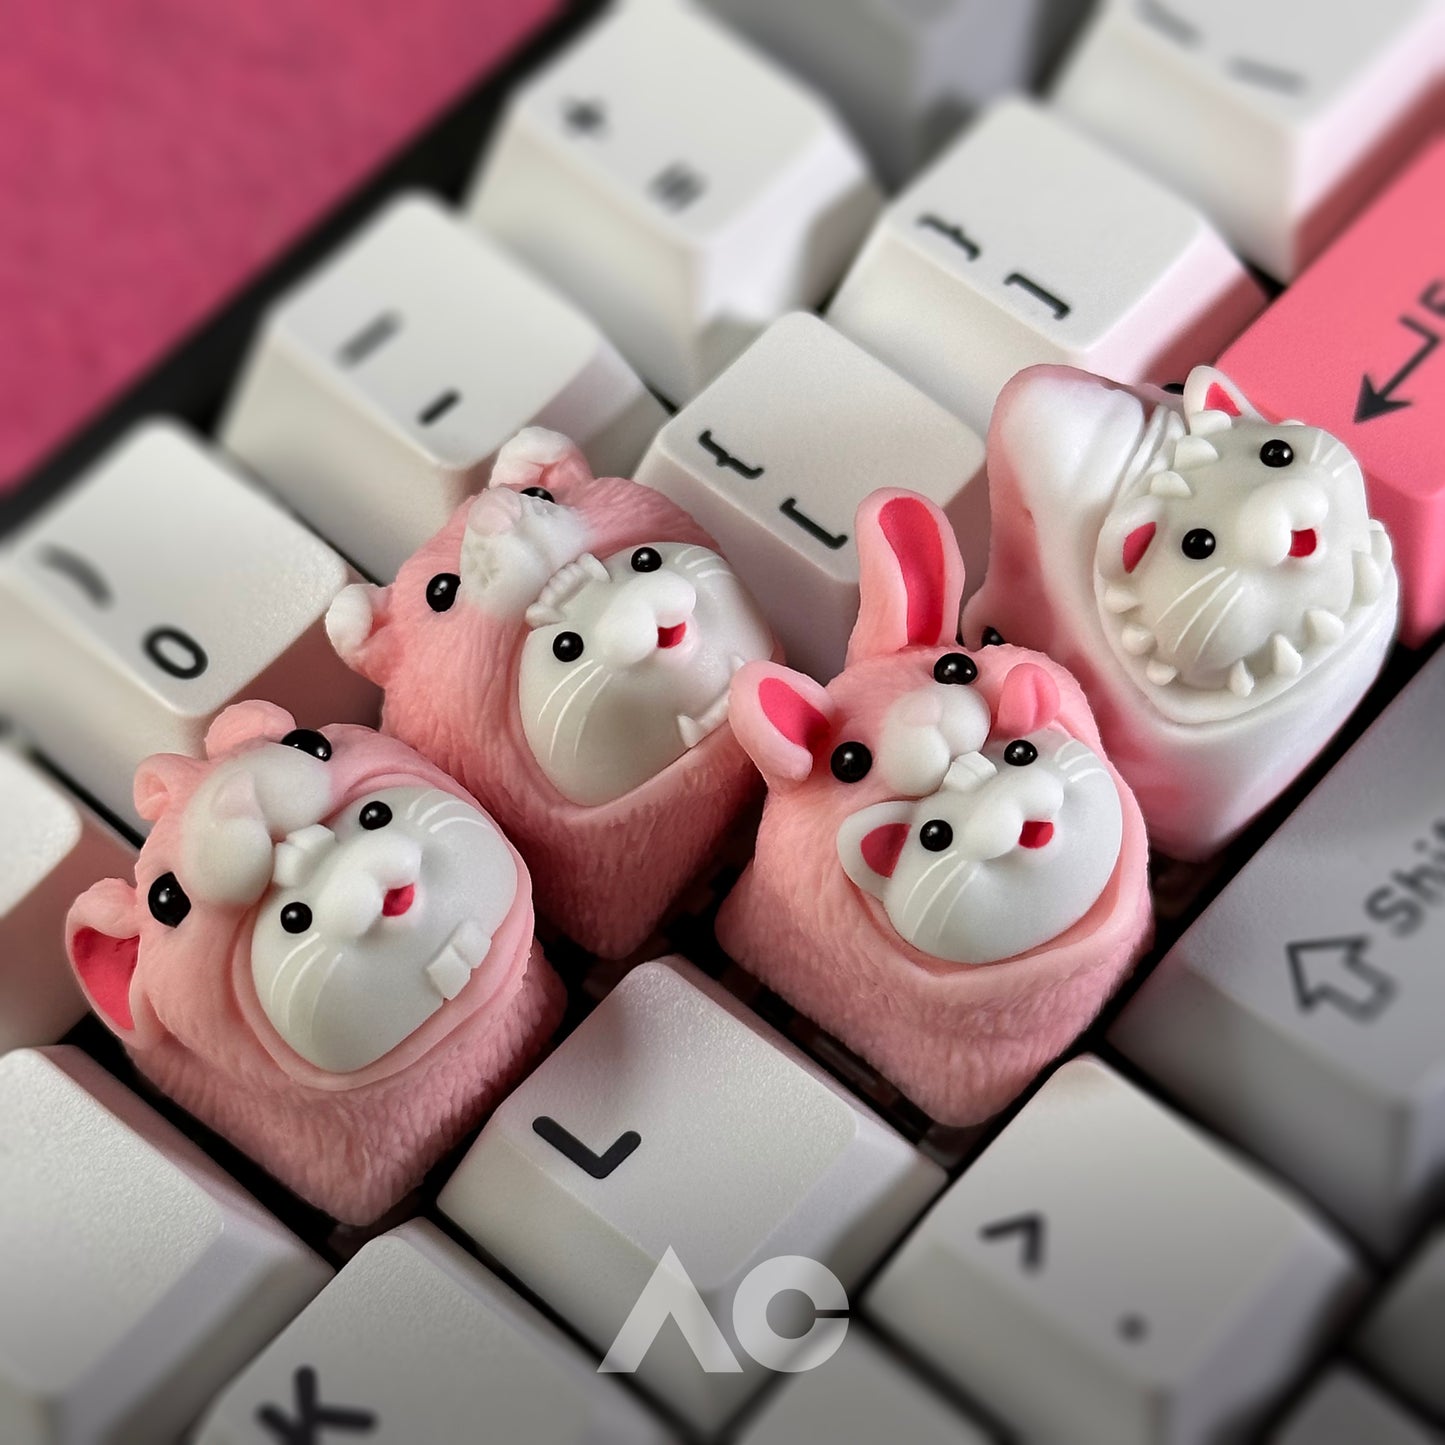 SakuraCat keycaps